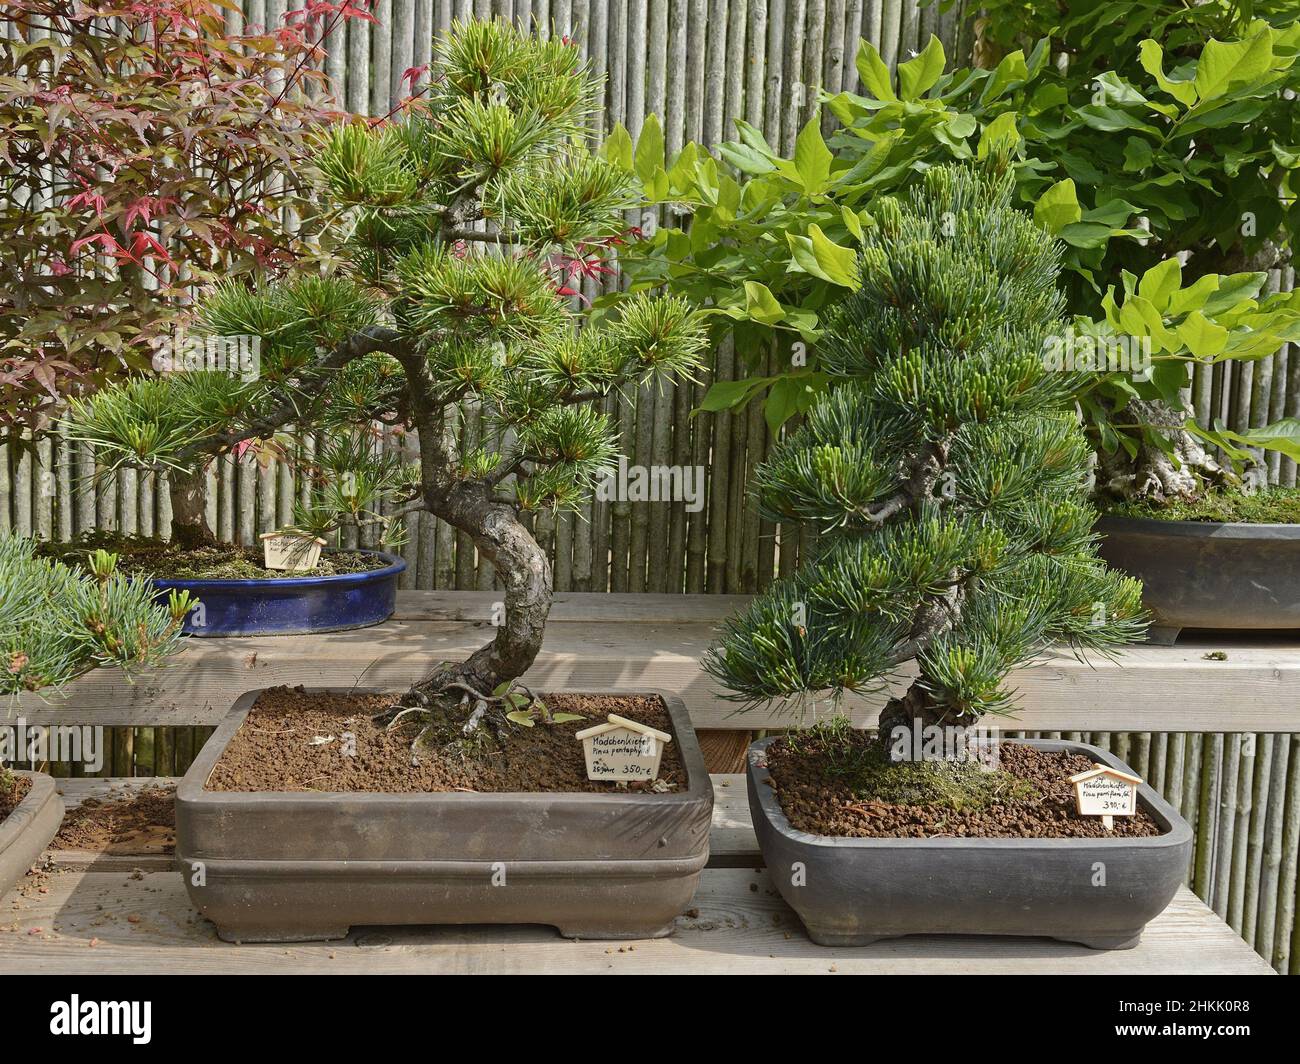 Pin blanc du Japon (Pinus parviflora, Pinus pentaphylla), arbre de bonzaies Banque D'Images